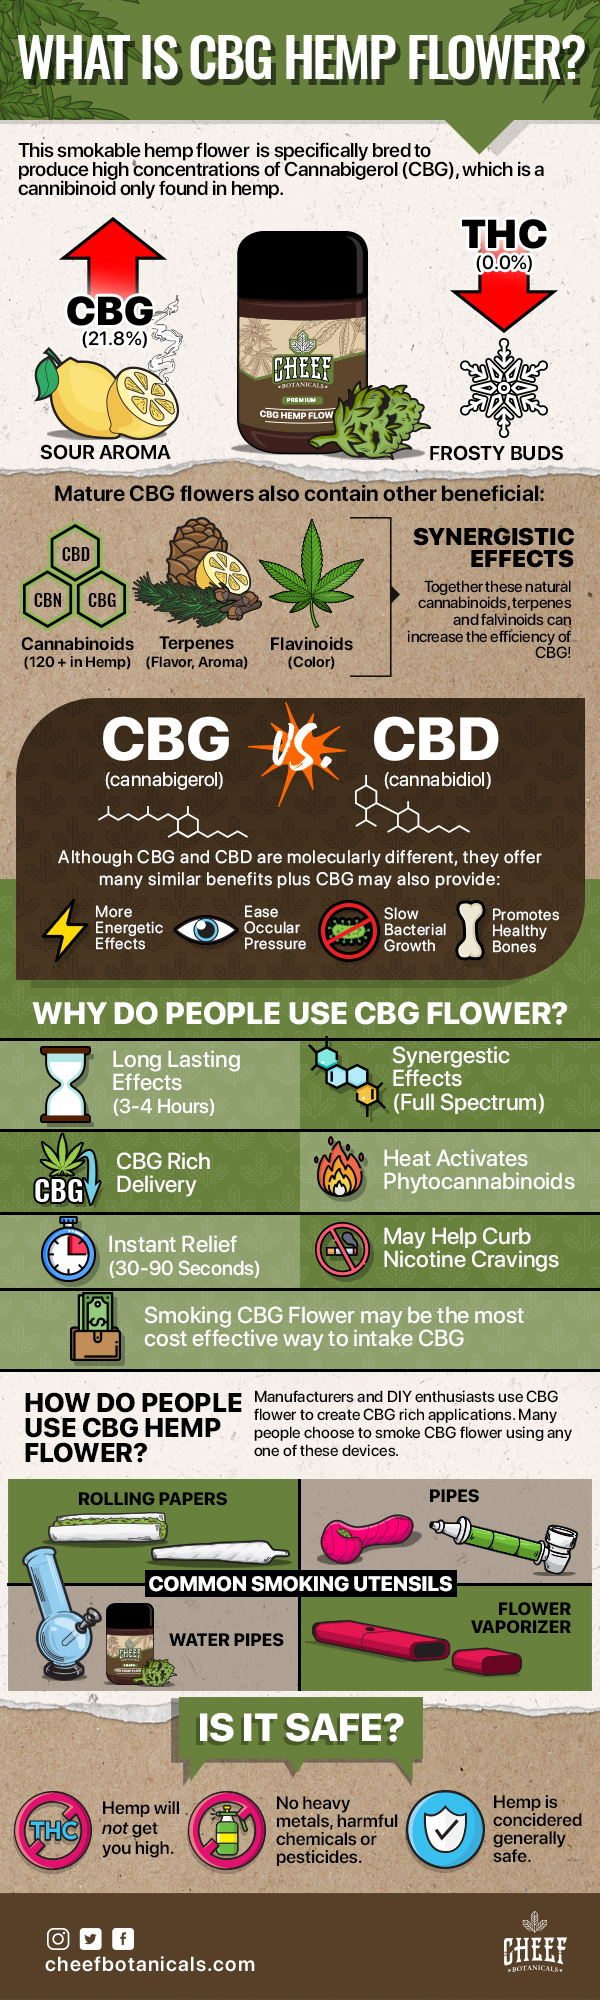 CBG Hemp Flower Explained